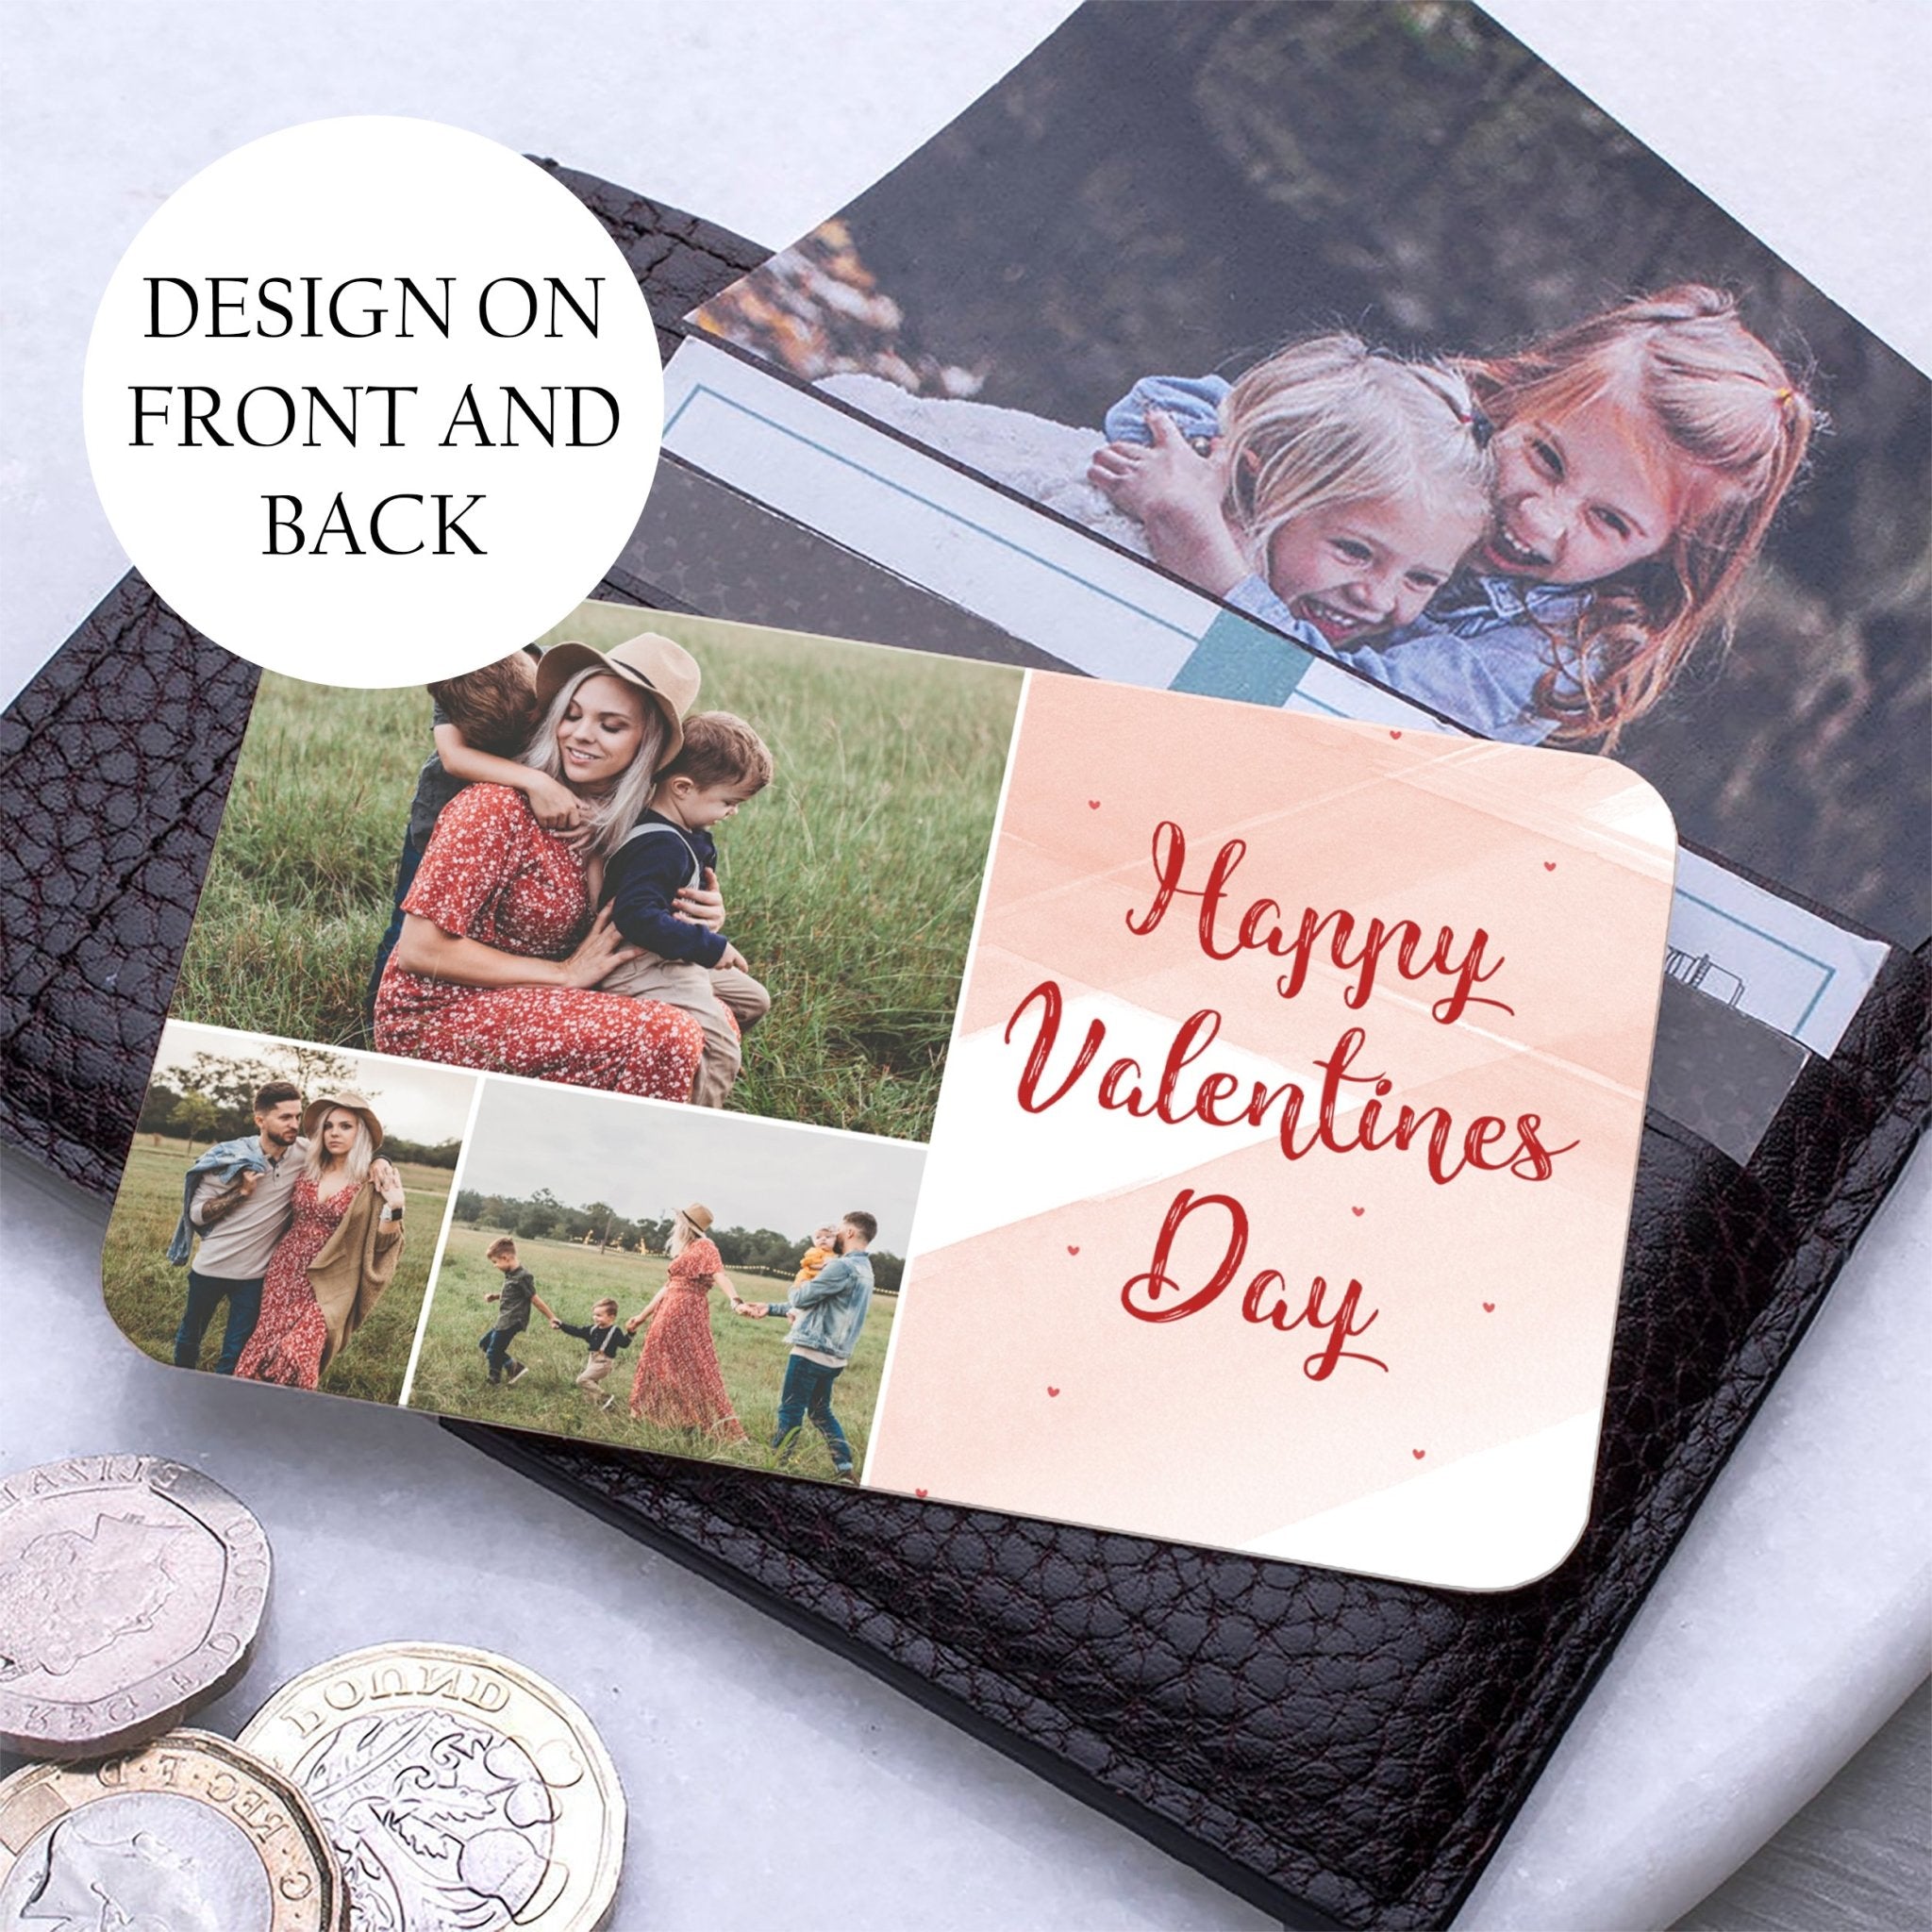 Valentines Wallet Insert For Boyfriend | Valentines Day Card For Him | Valentines Day Gift For Boyfriend